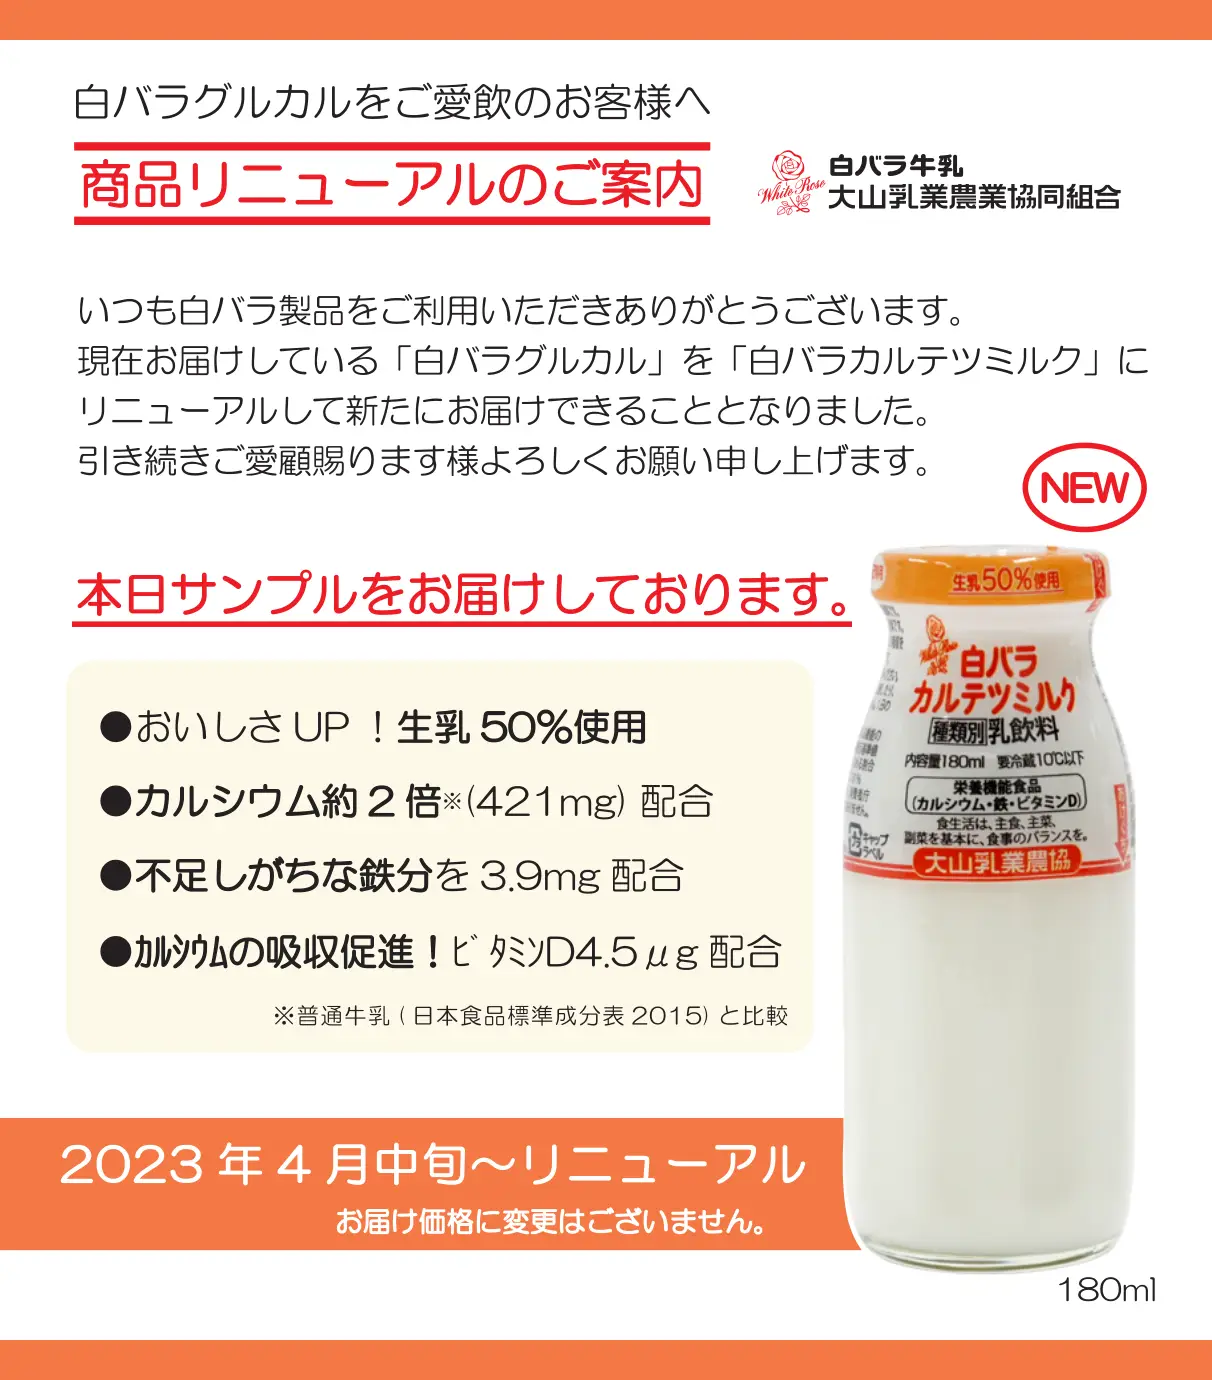 白バラカルテツミルク商品紹介